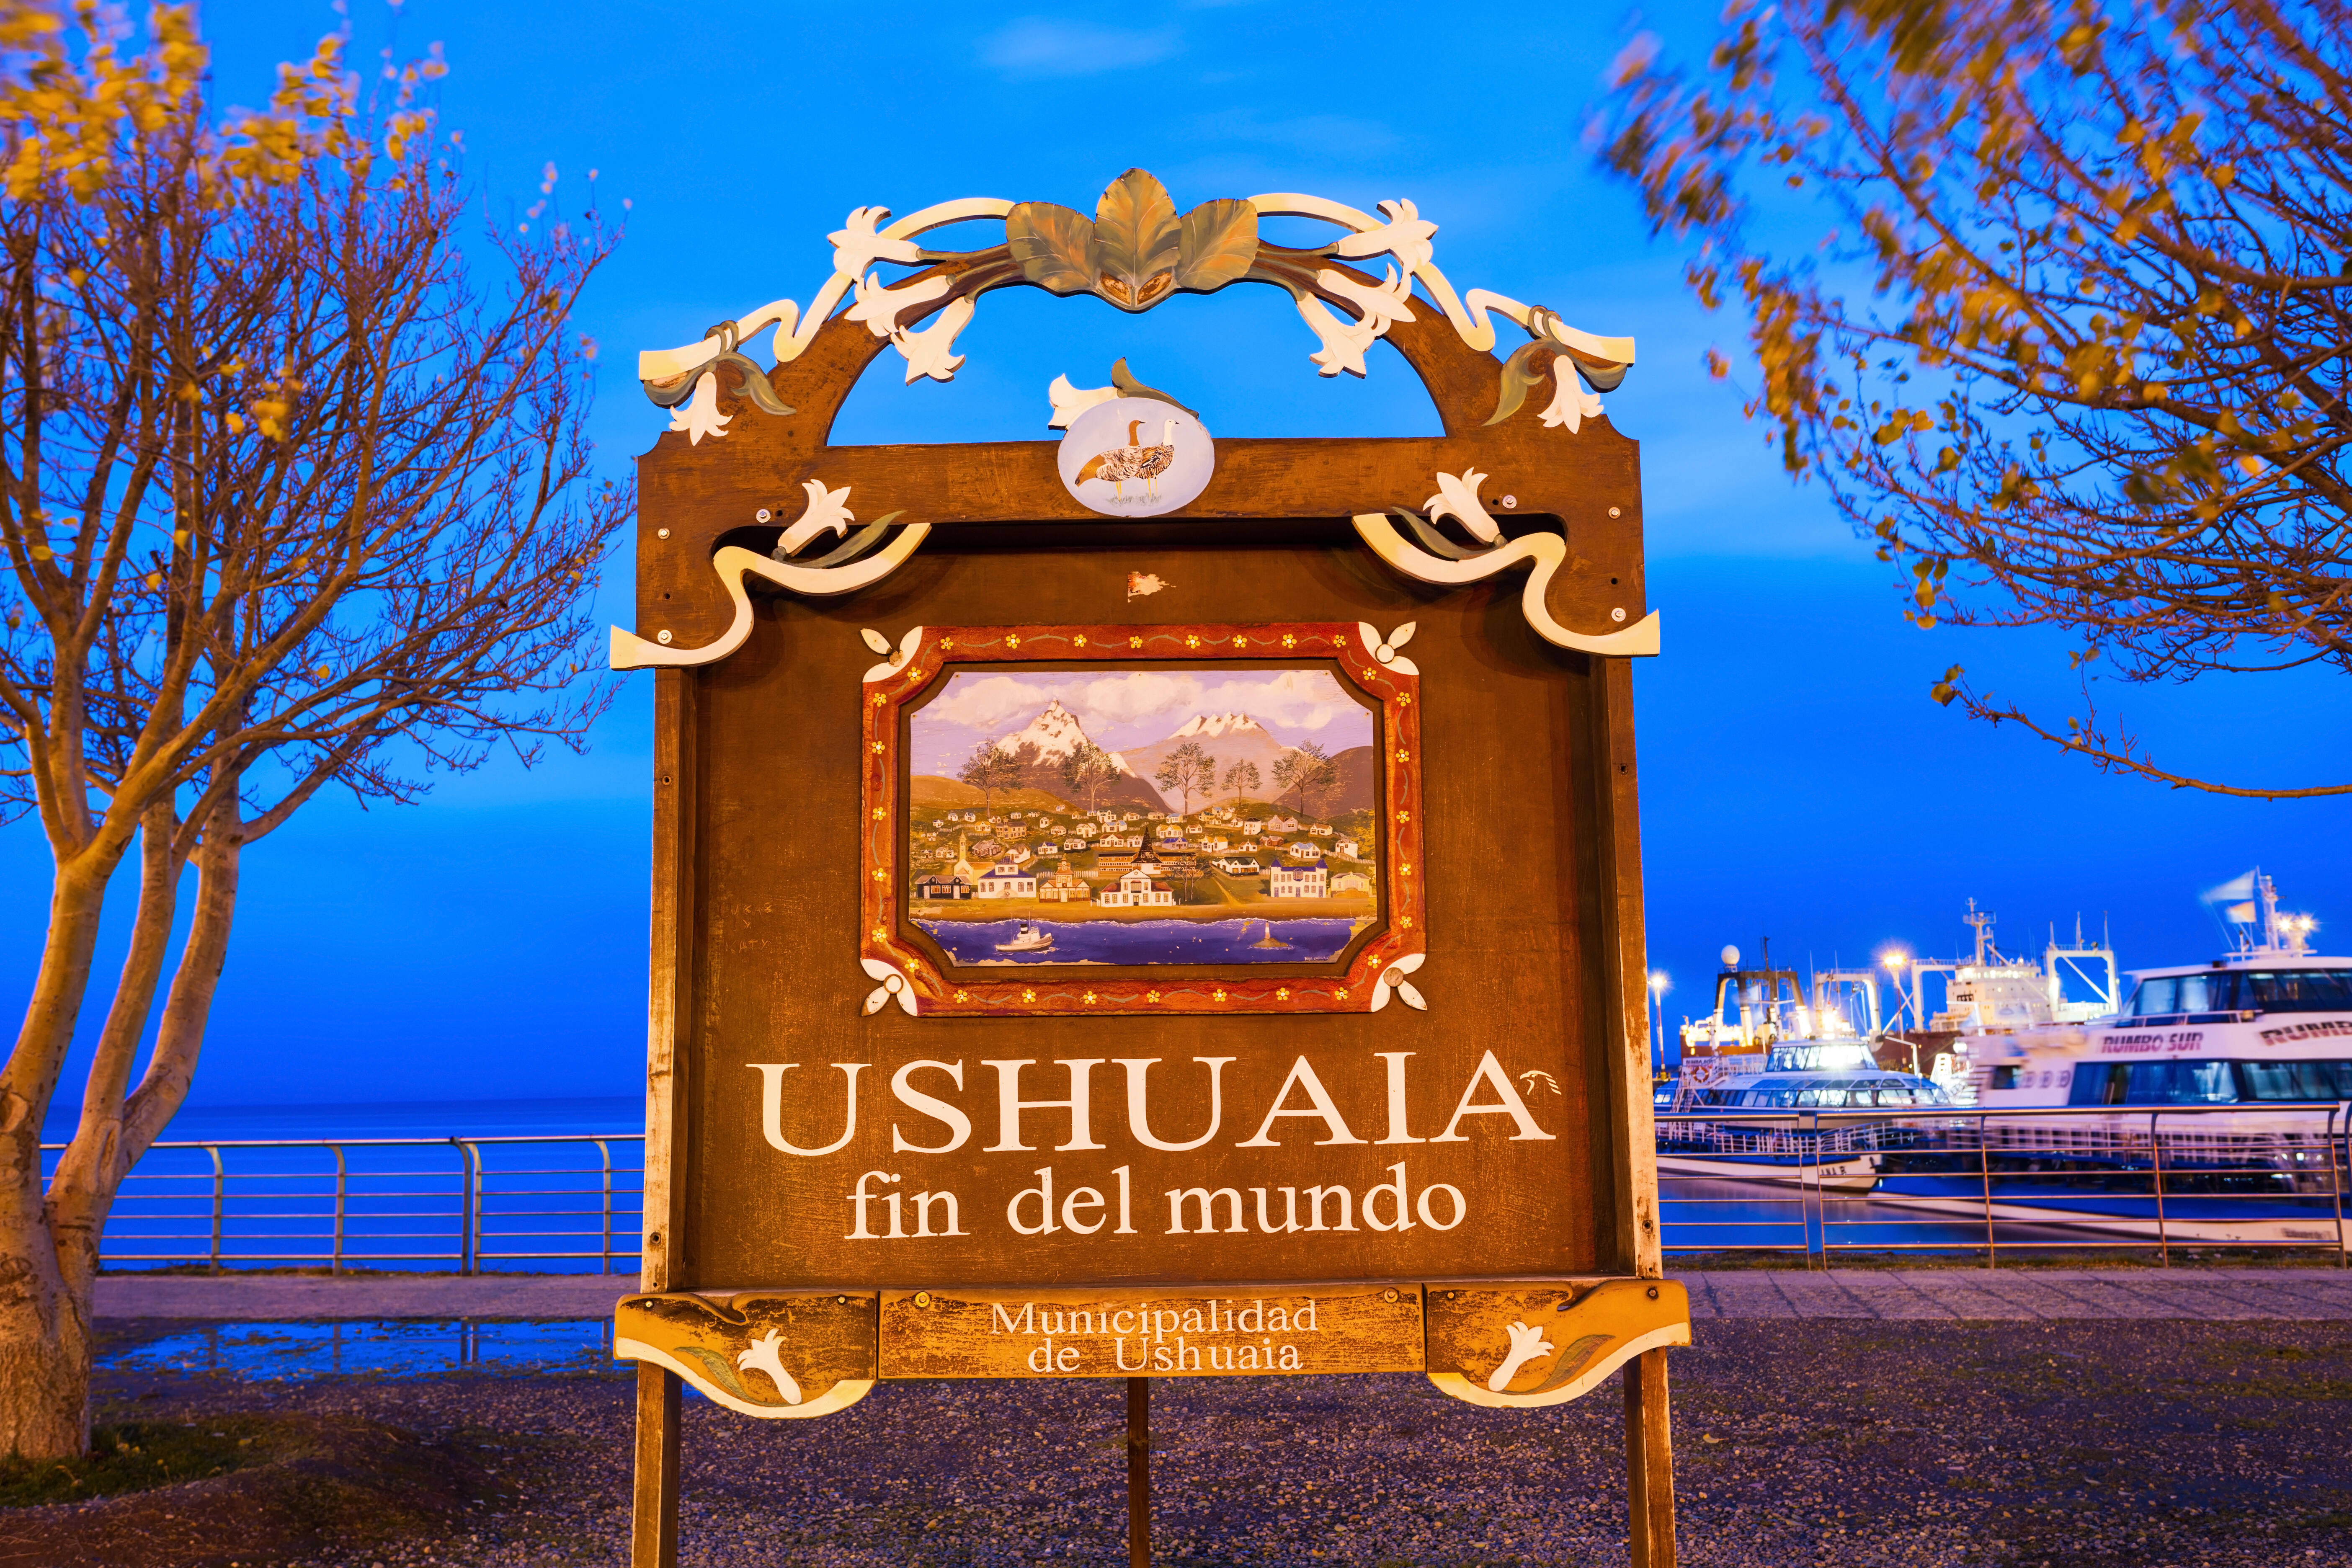 Literalmente no Fim do Mundo: Ushuaia é a cidade mais ao sul do planeta, e você não pode perder a oportunidade de visitá-la